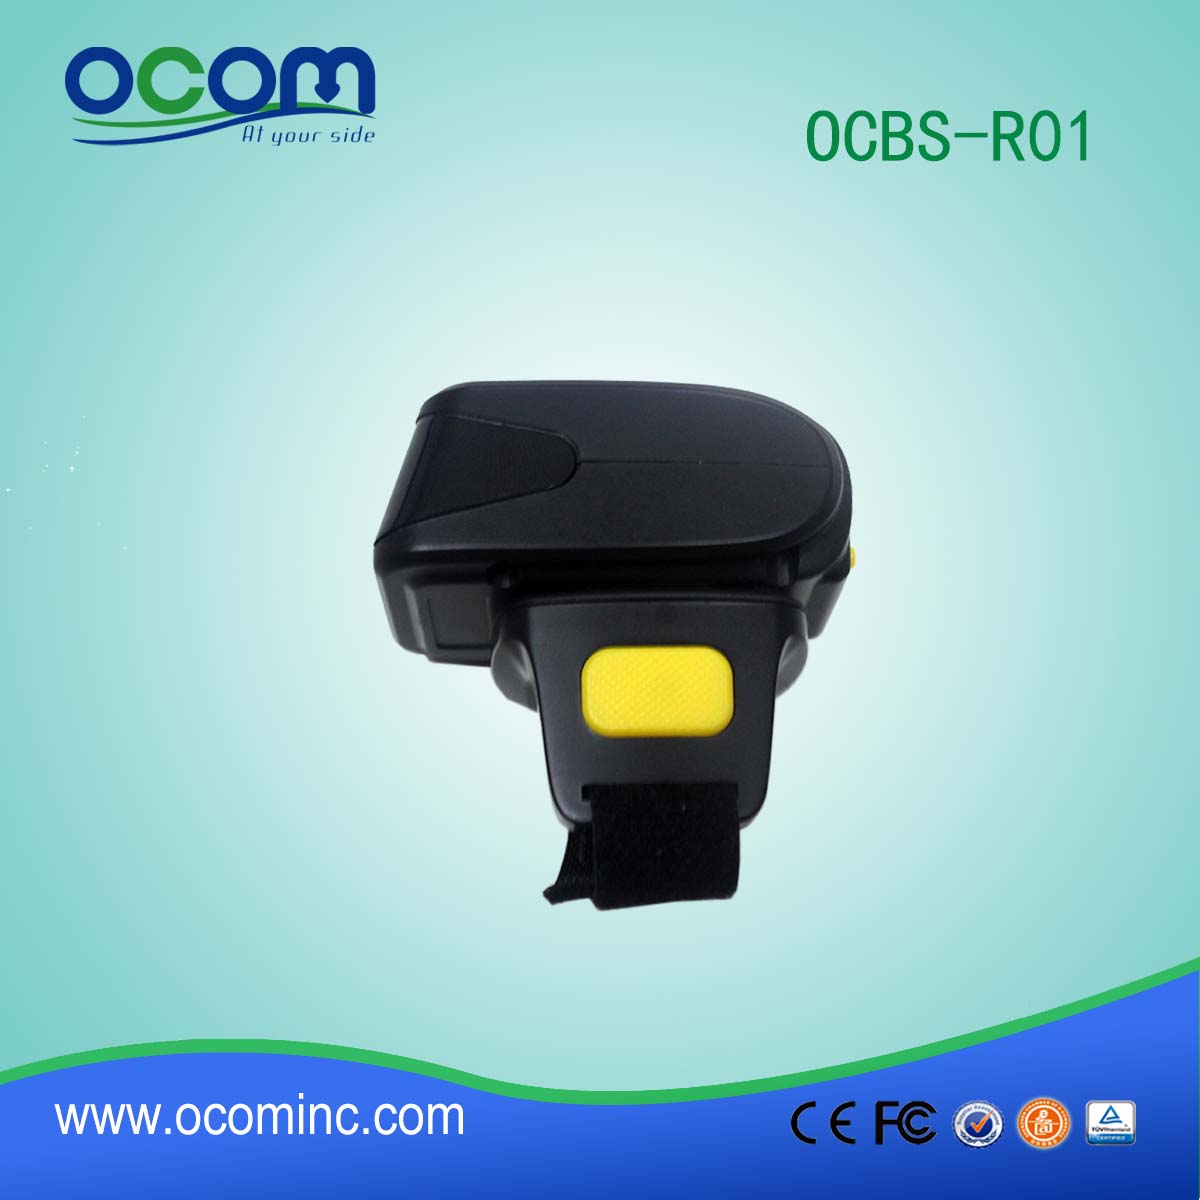 OCBC-R01-R01 1D无线蓝牙条码扫描器